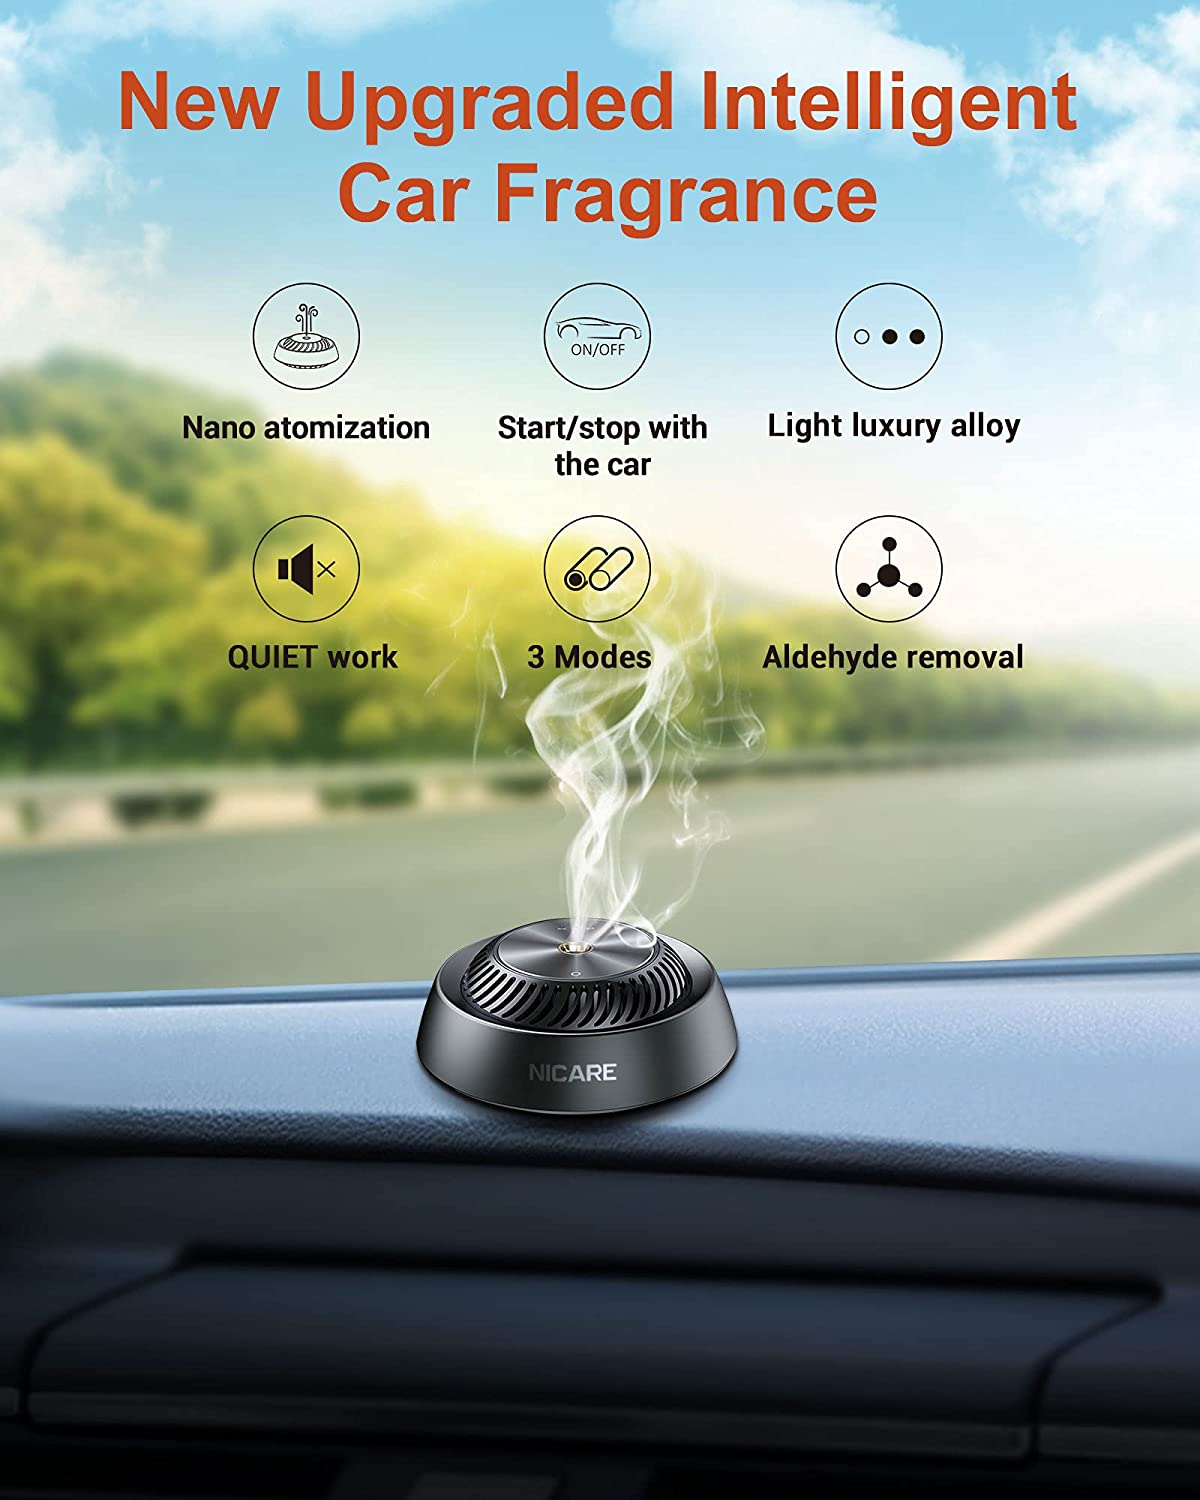 Evair Fruity Car Air Freshener  Luxury Aroma Car Perfume – Evair